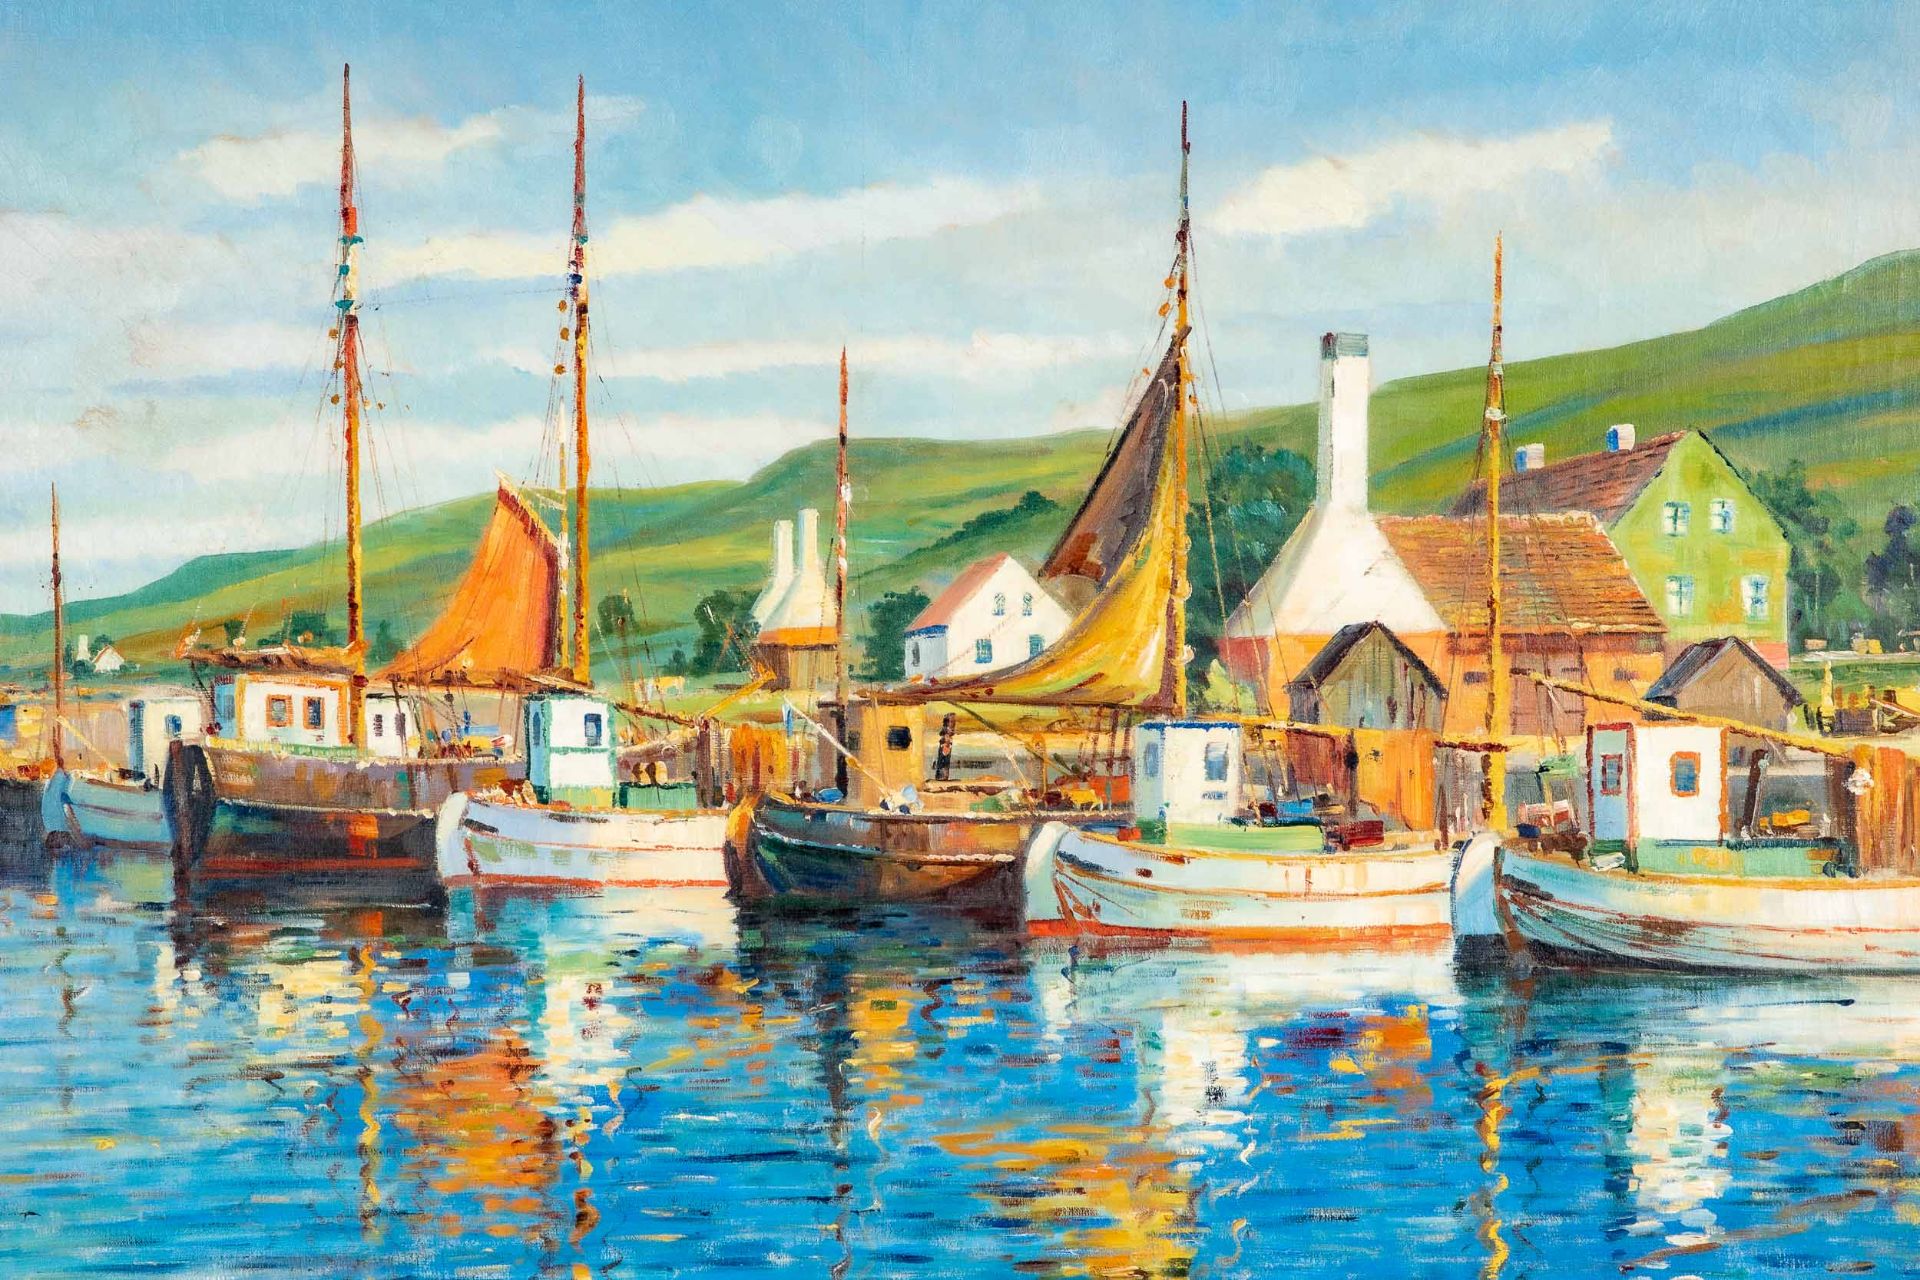 "Farbenfroher dänischer Hafen", großformatiges Gemälde, ca. 88 x 130 cm, unten links signiert: "Aru - Bild 3 aus 8